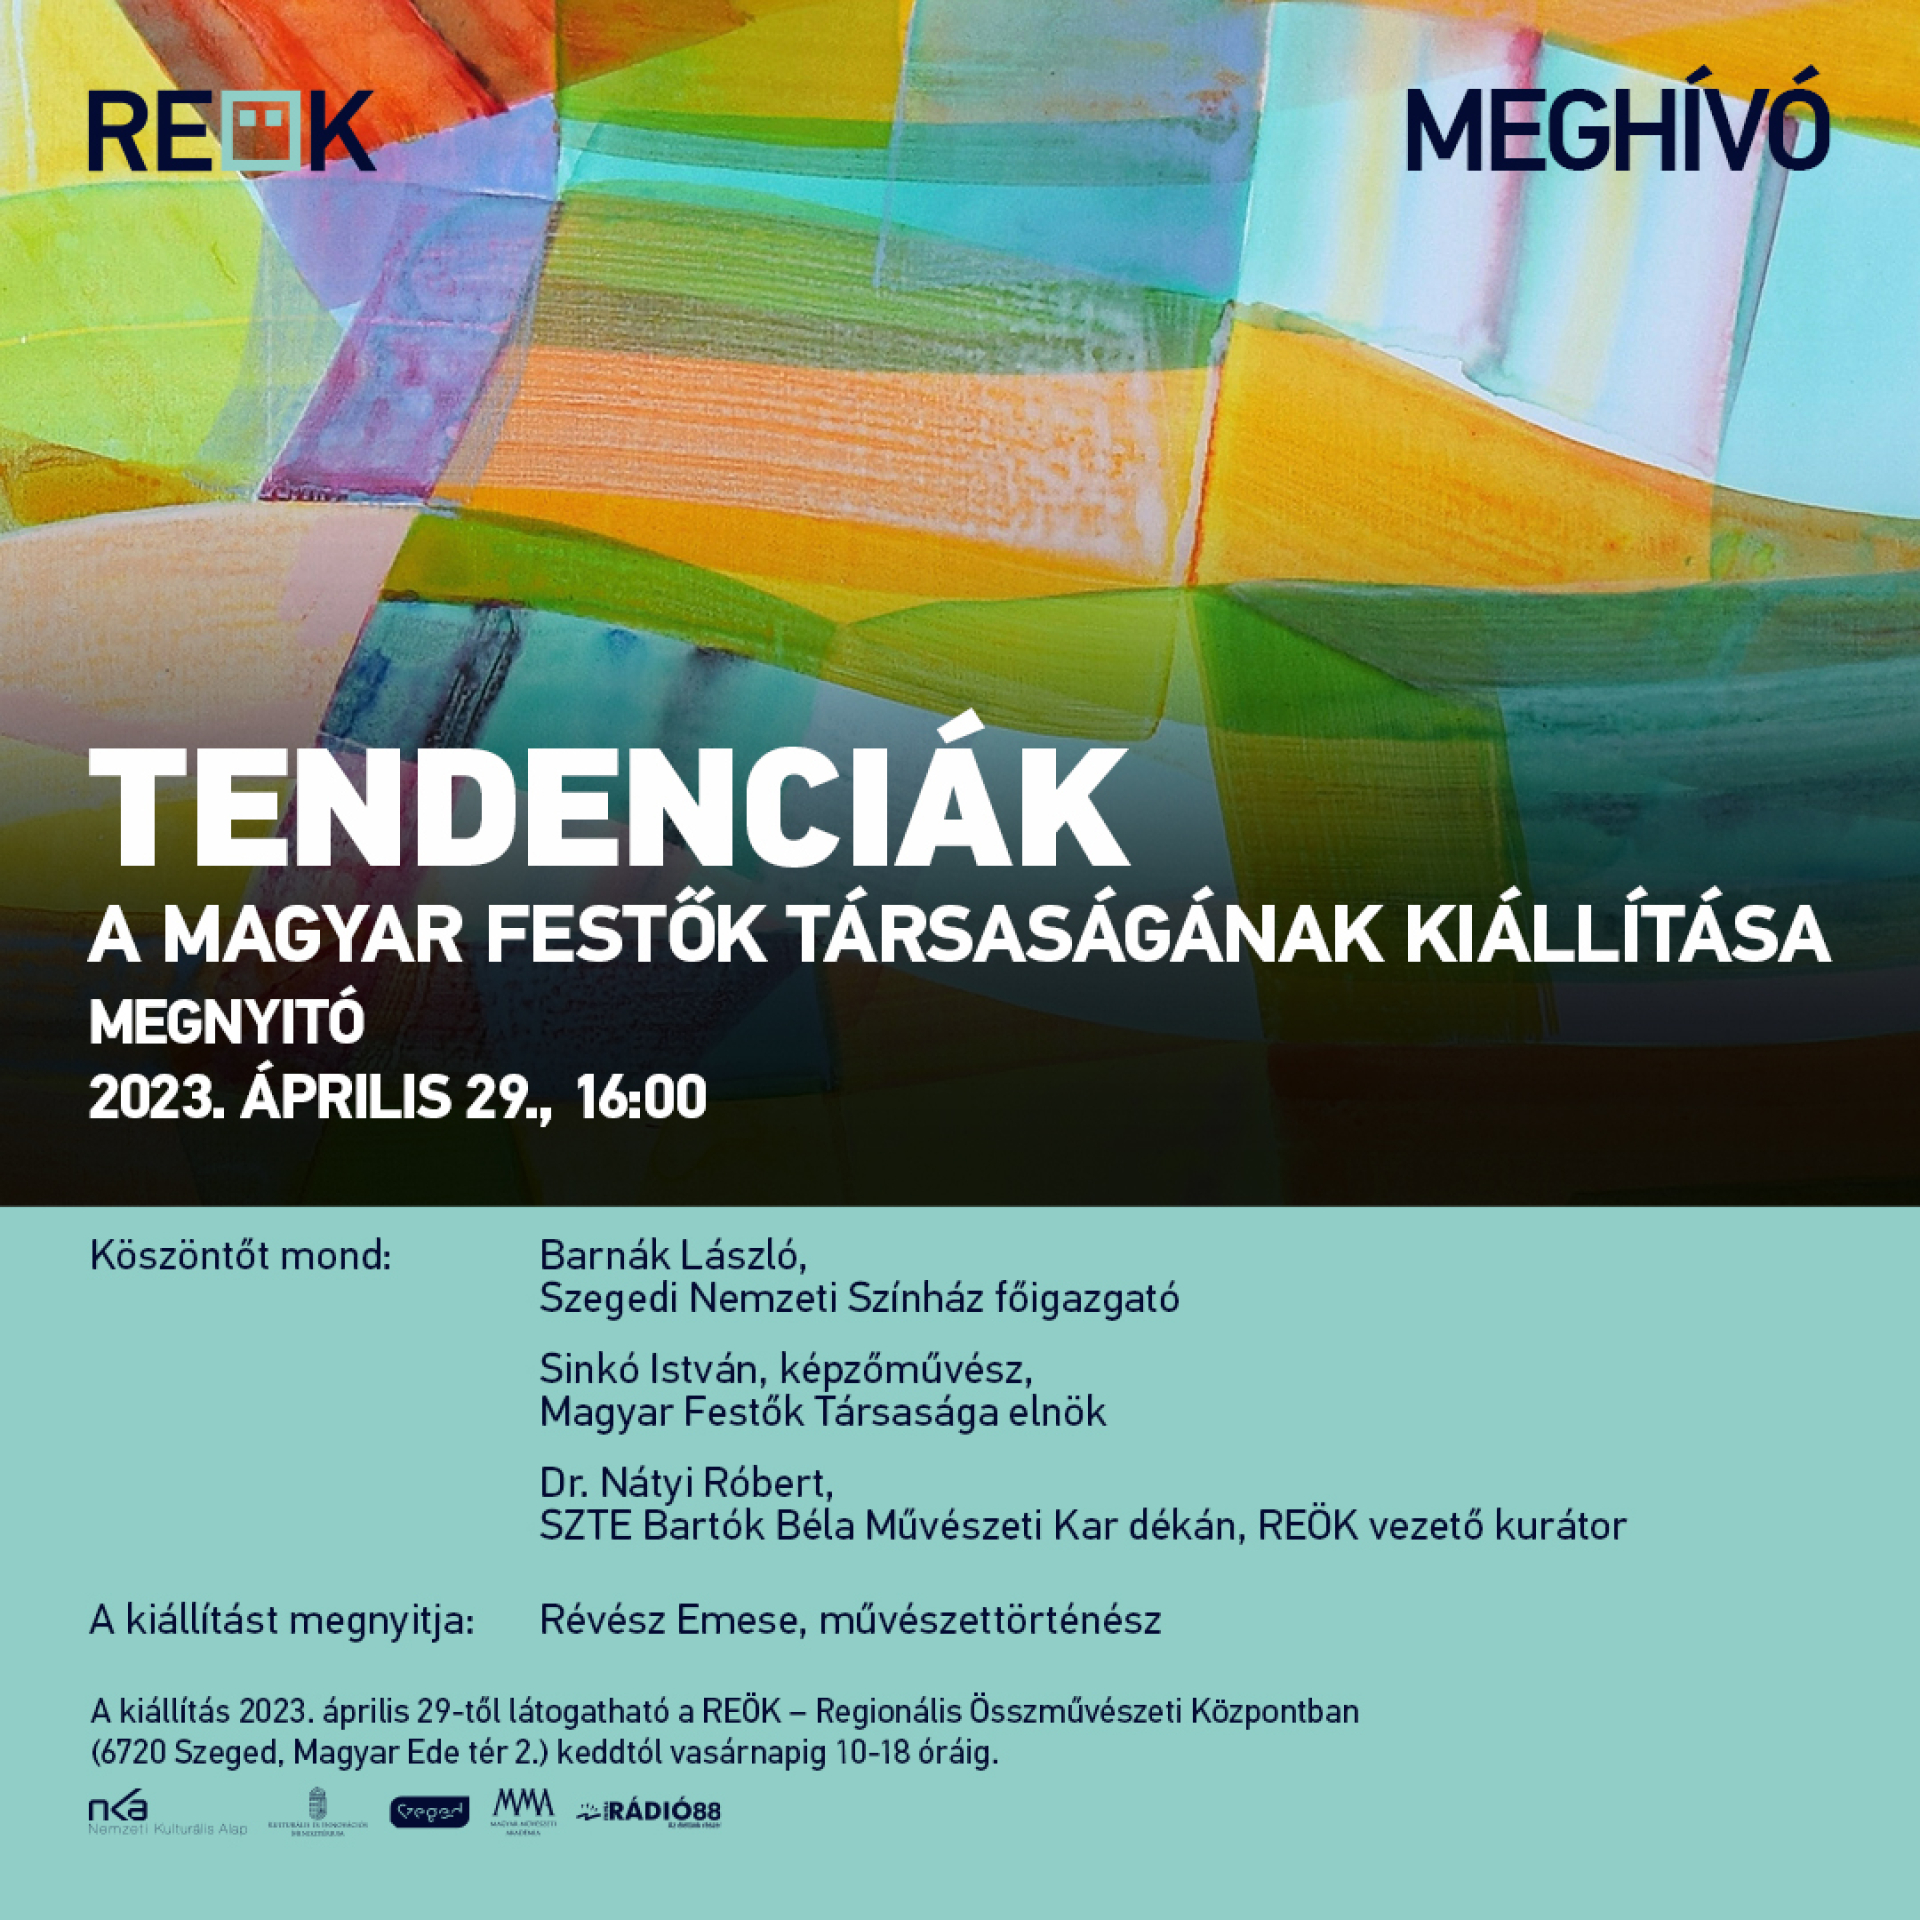 Tendenciák - a Magyar Festők Társaságának kiállítása nyílik a REÖK-ben